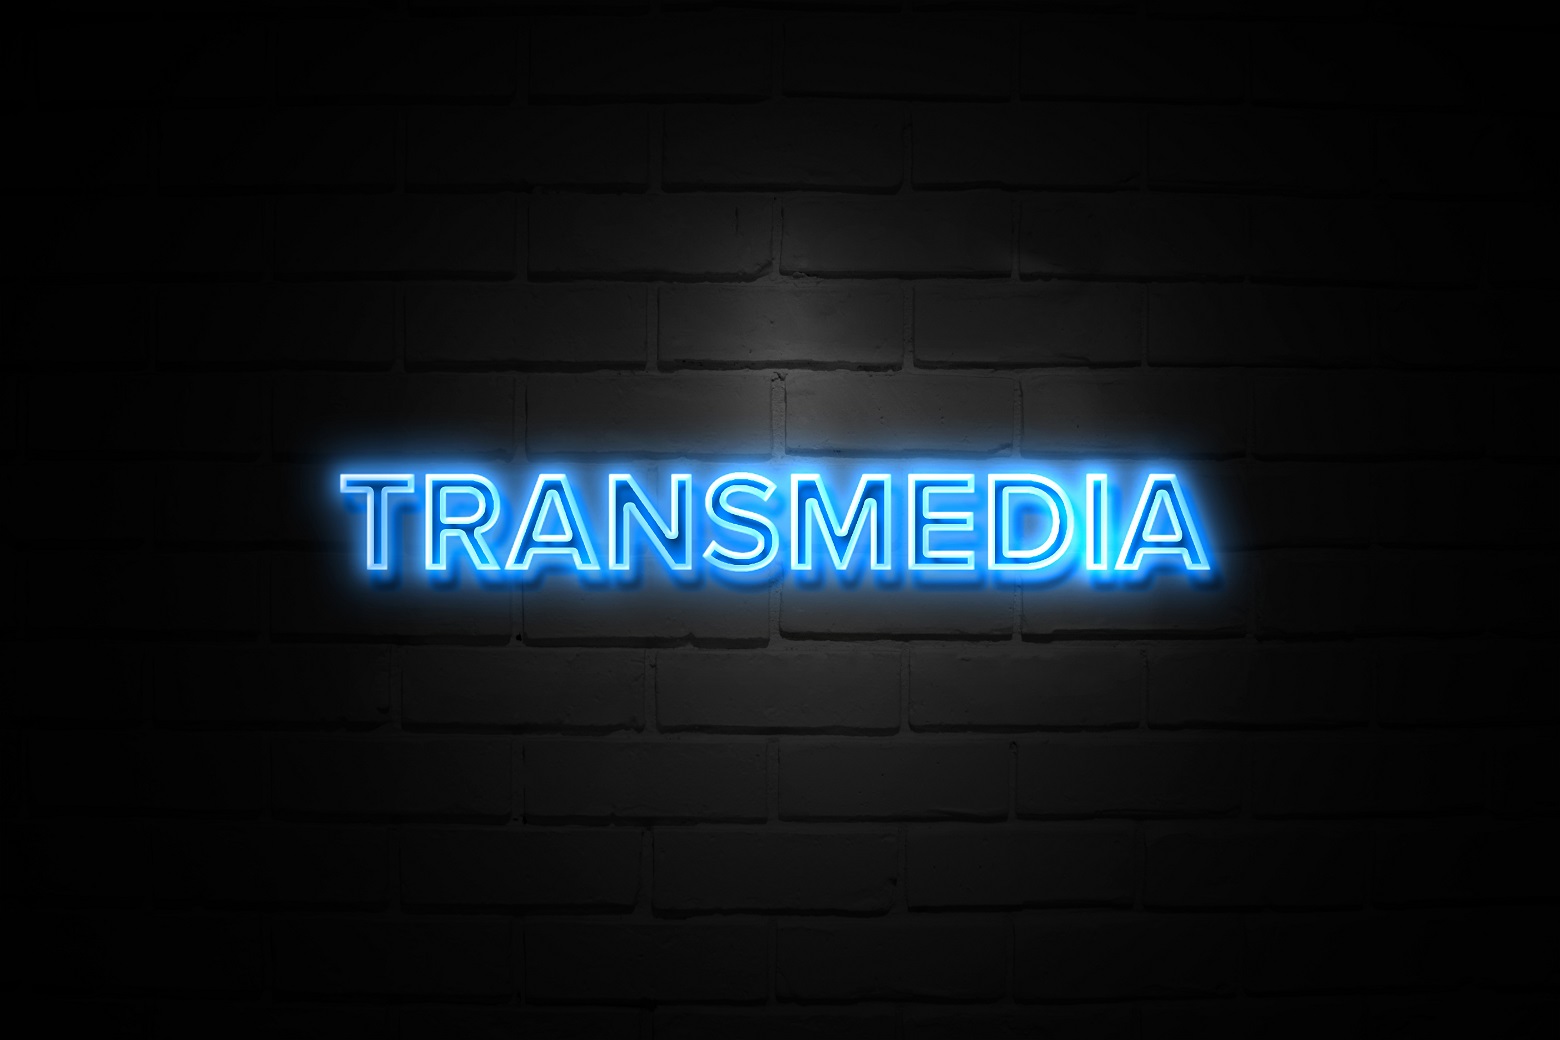 Le transmédias : une définition et un périmètre qui font débat